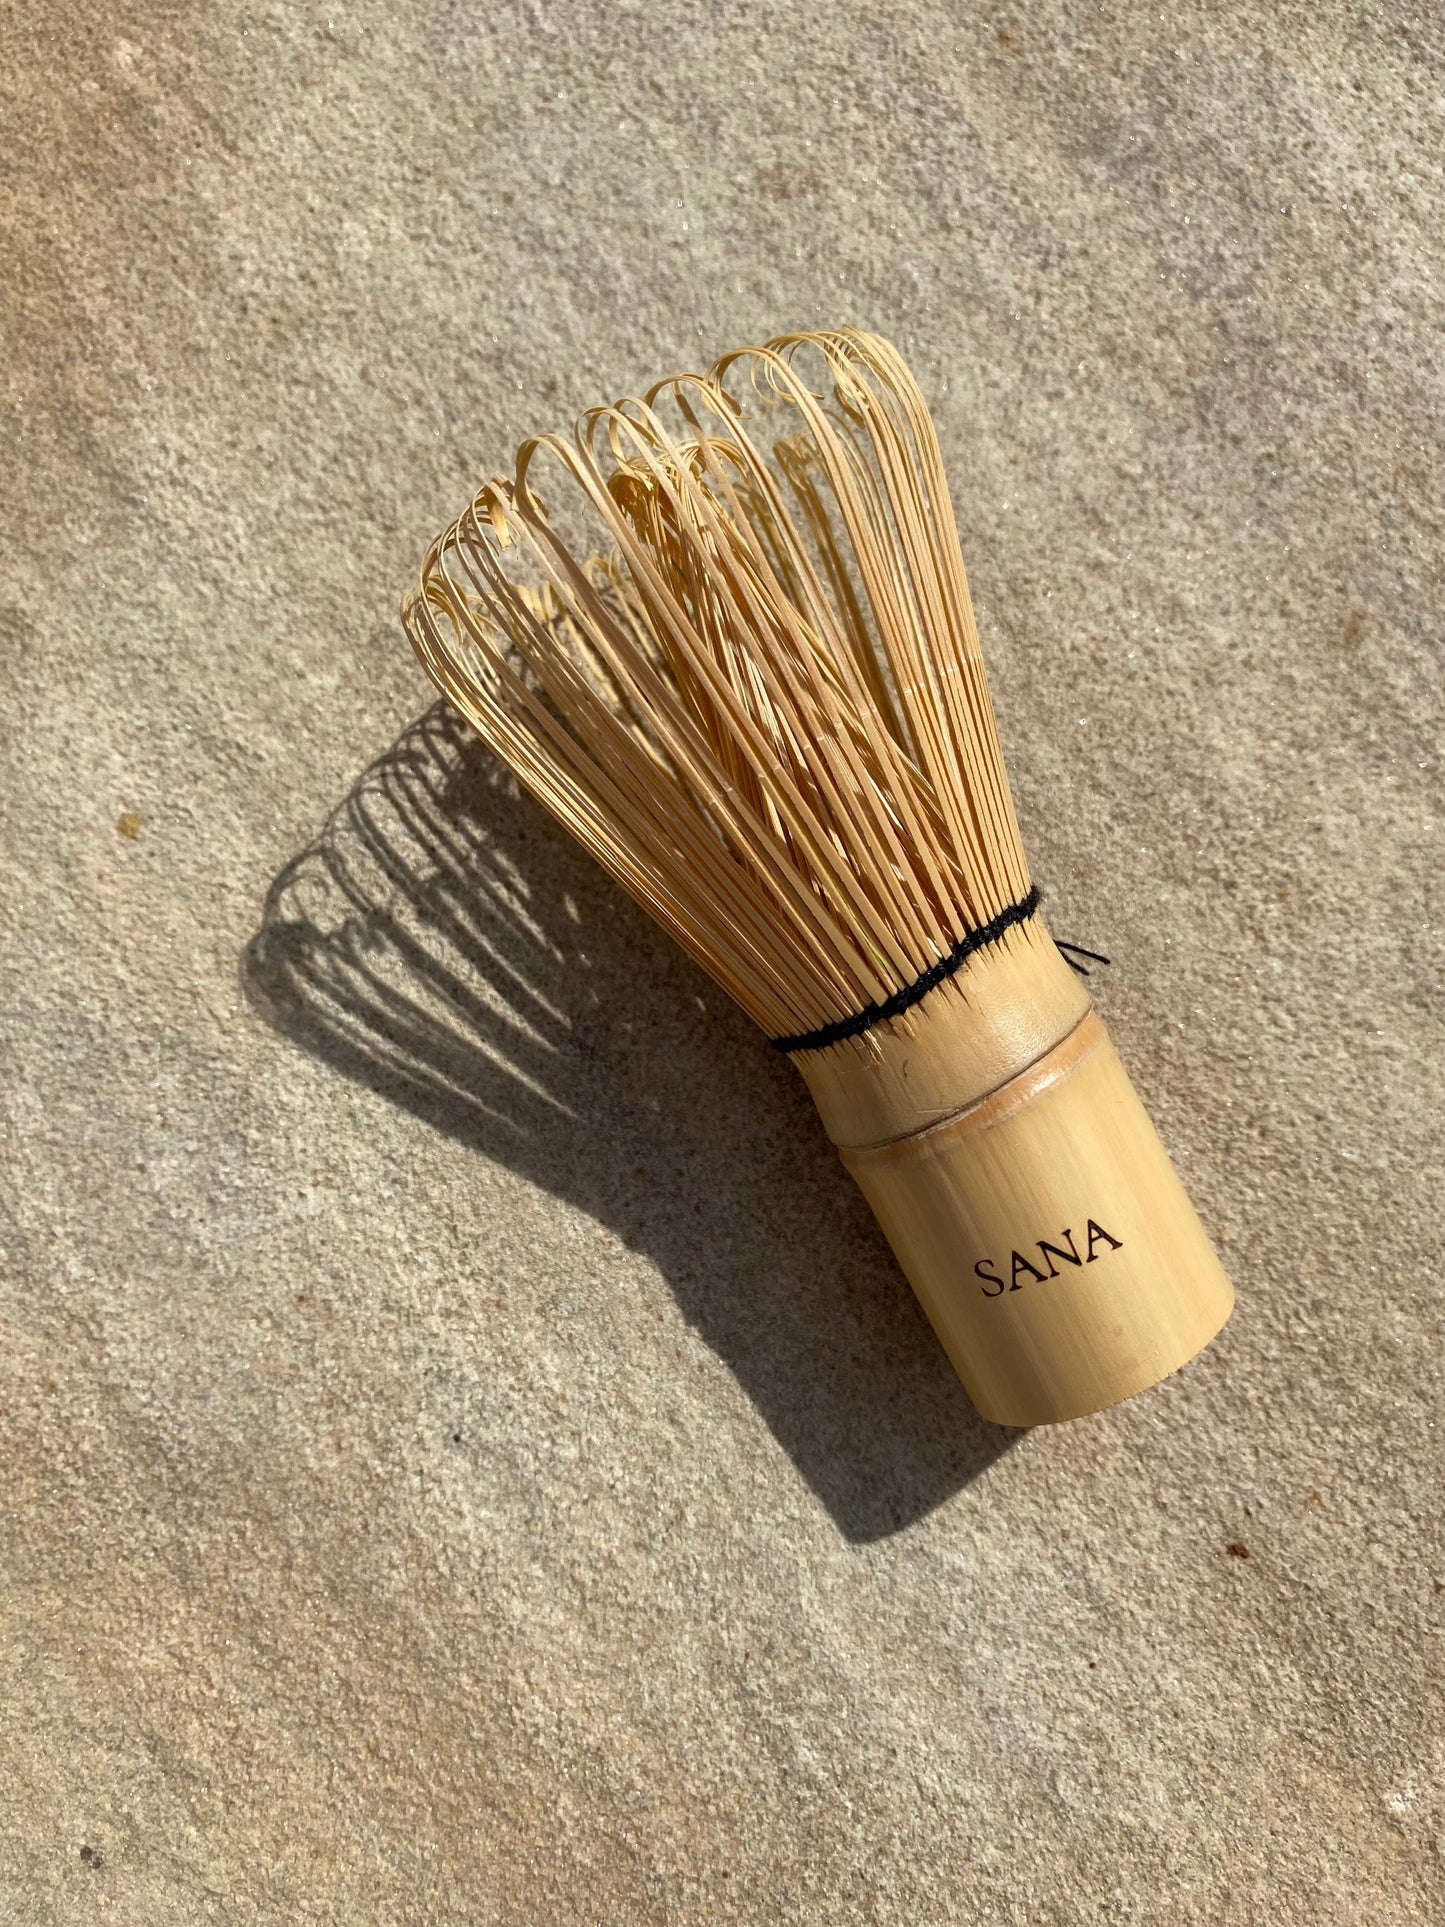 Bamboo Matcha Whisk (100 prong)